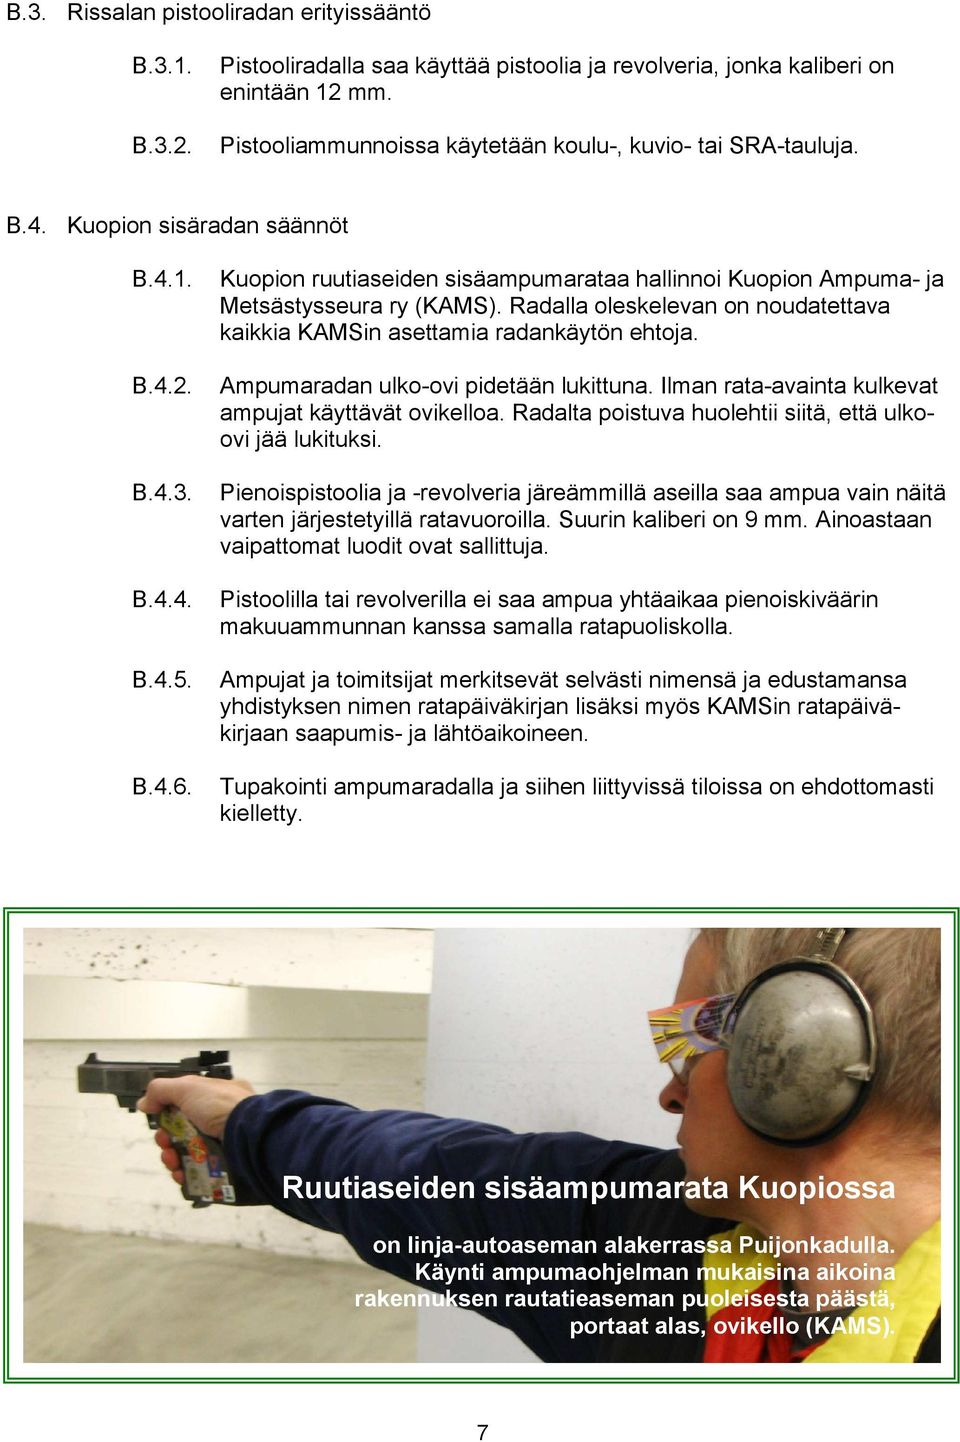 Kuopion ruutiaseiden sisäampumarataa hallinnoi Kuopion Ampuma- ja Metsästysseura ry (KAMS). Radalla oleskelevan on noudatettava kaikkia KAMSin asettamia radankäytön ehtoja.